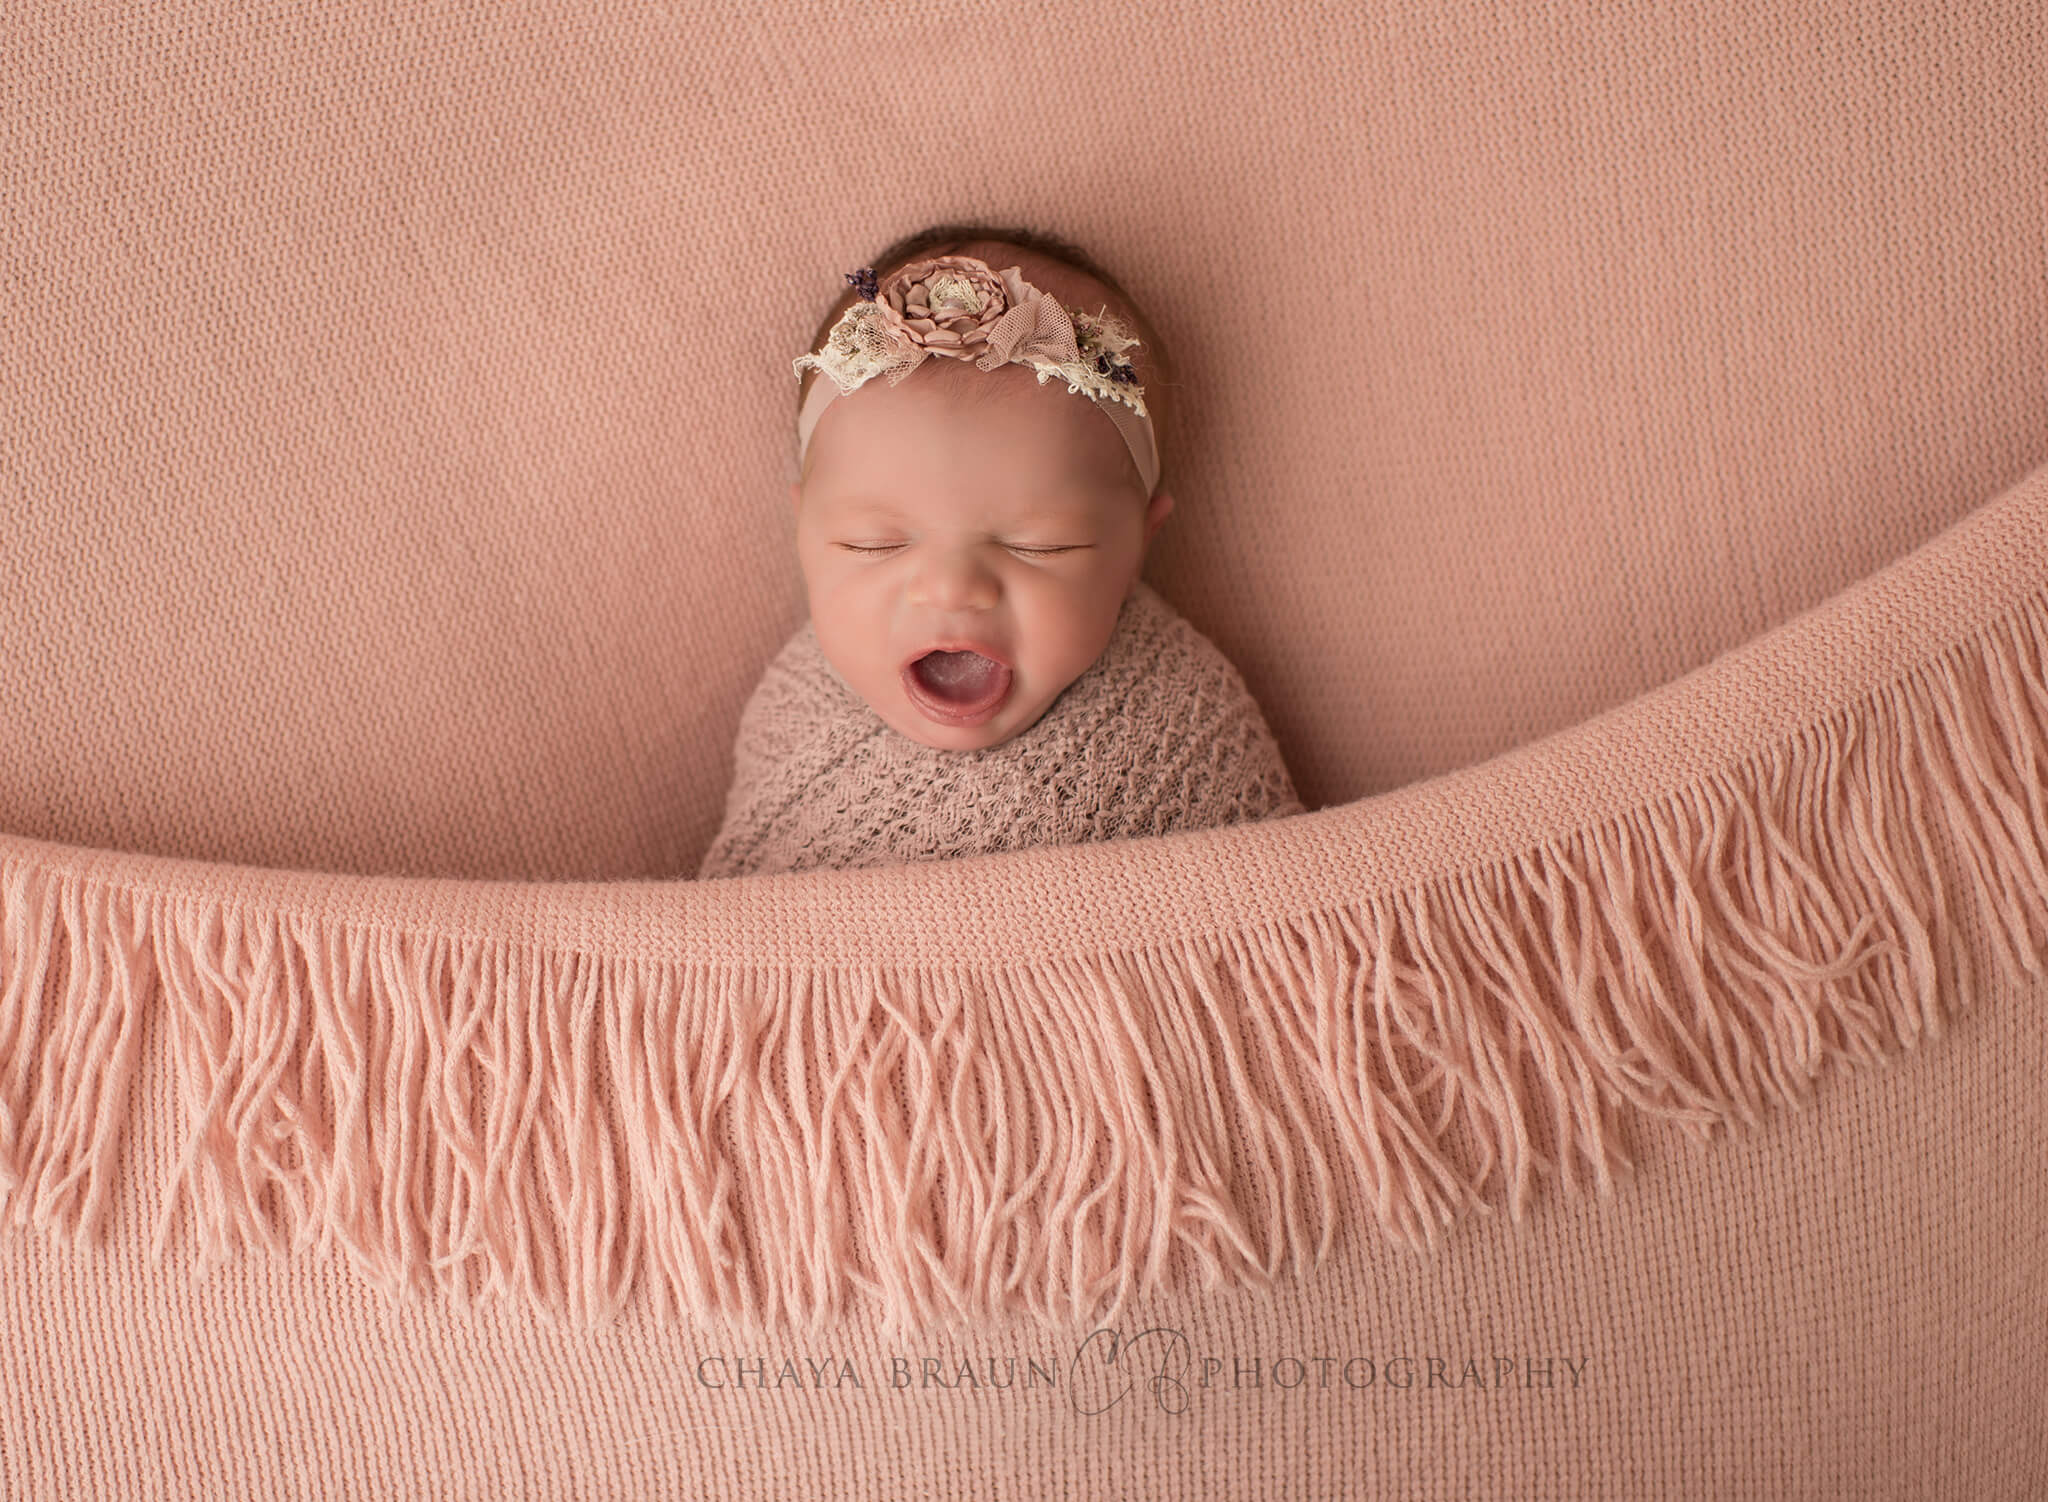 newborn baby yawning photo